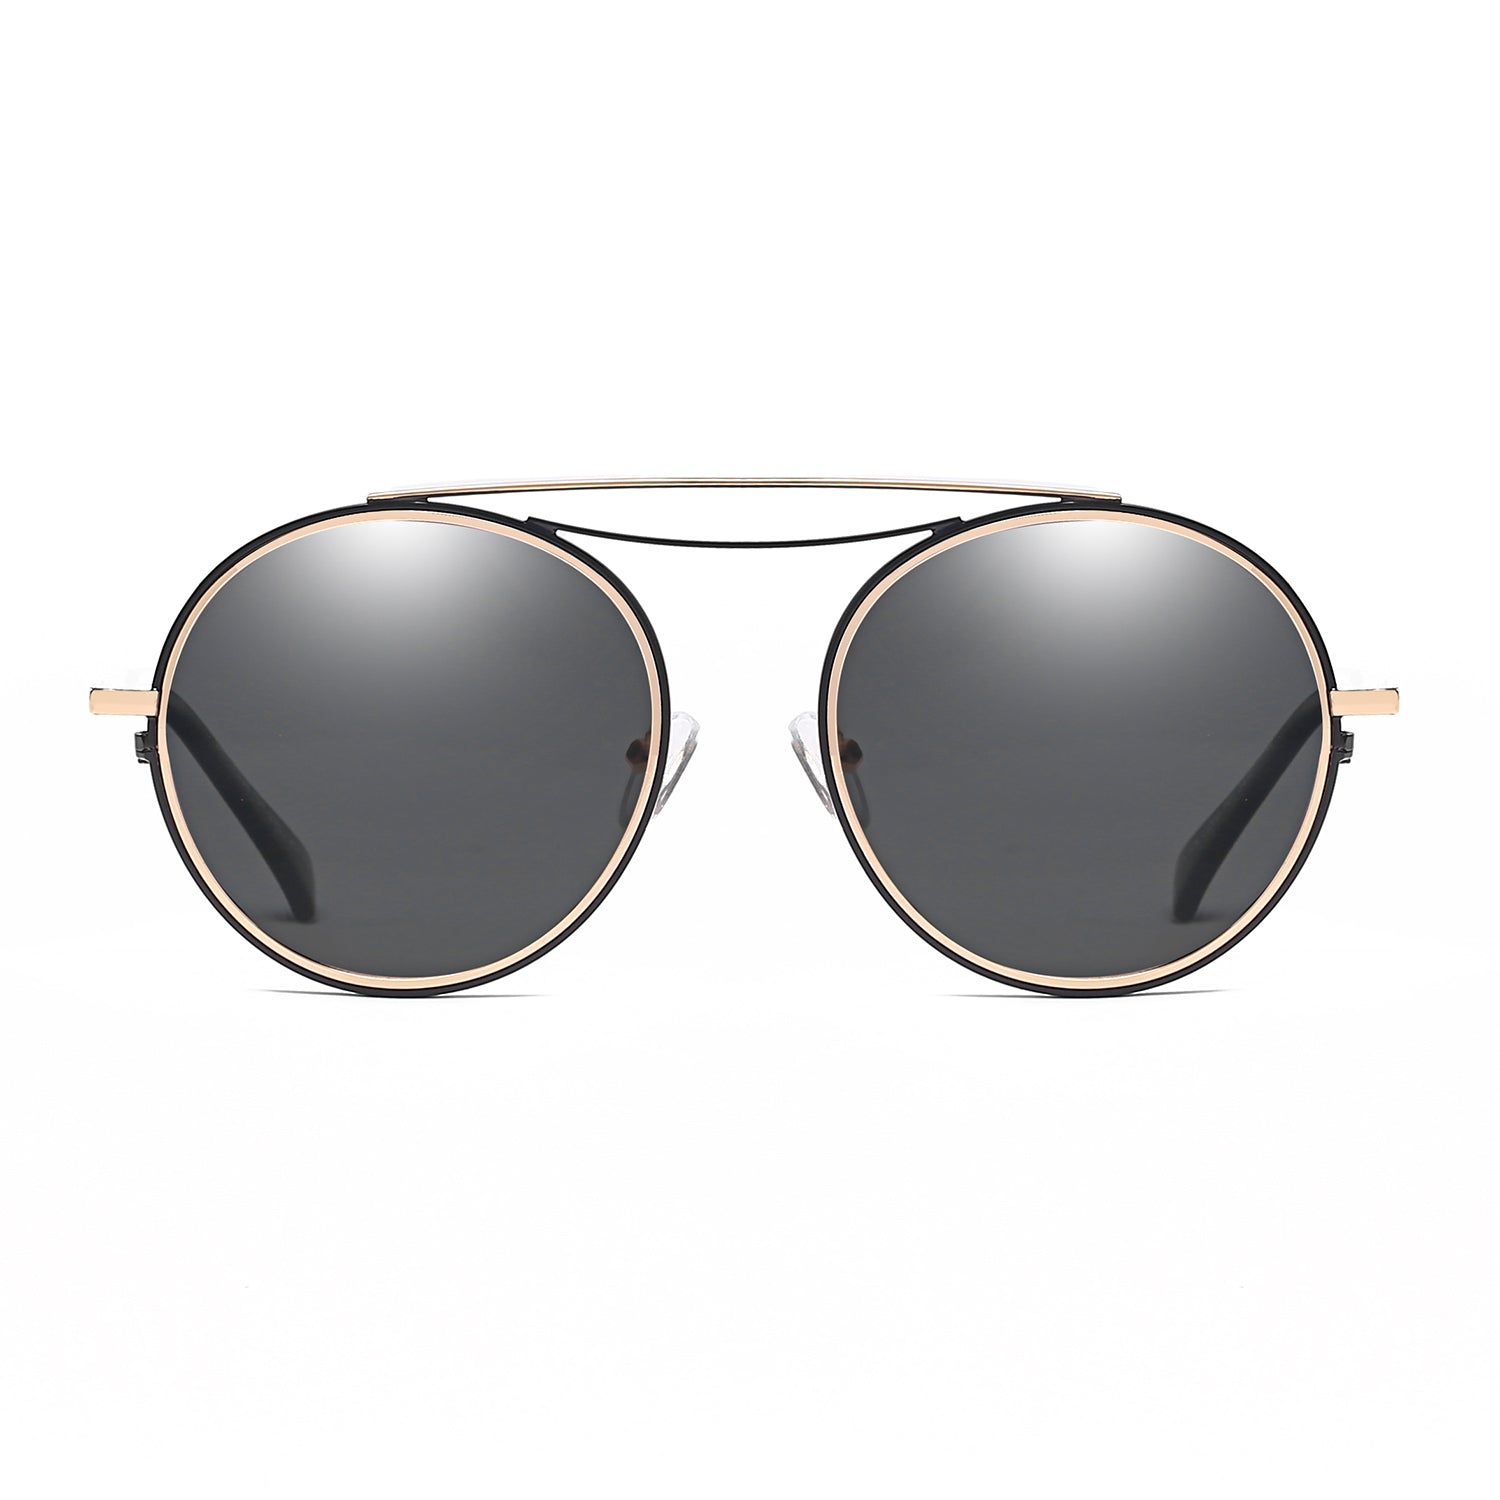 Oversized round tortoiseshell-acetate sunglasses, Celine Eyewear, MATCHESFASHION US